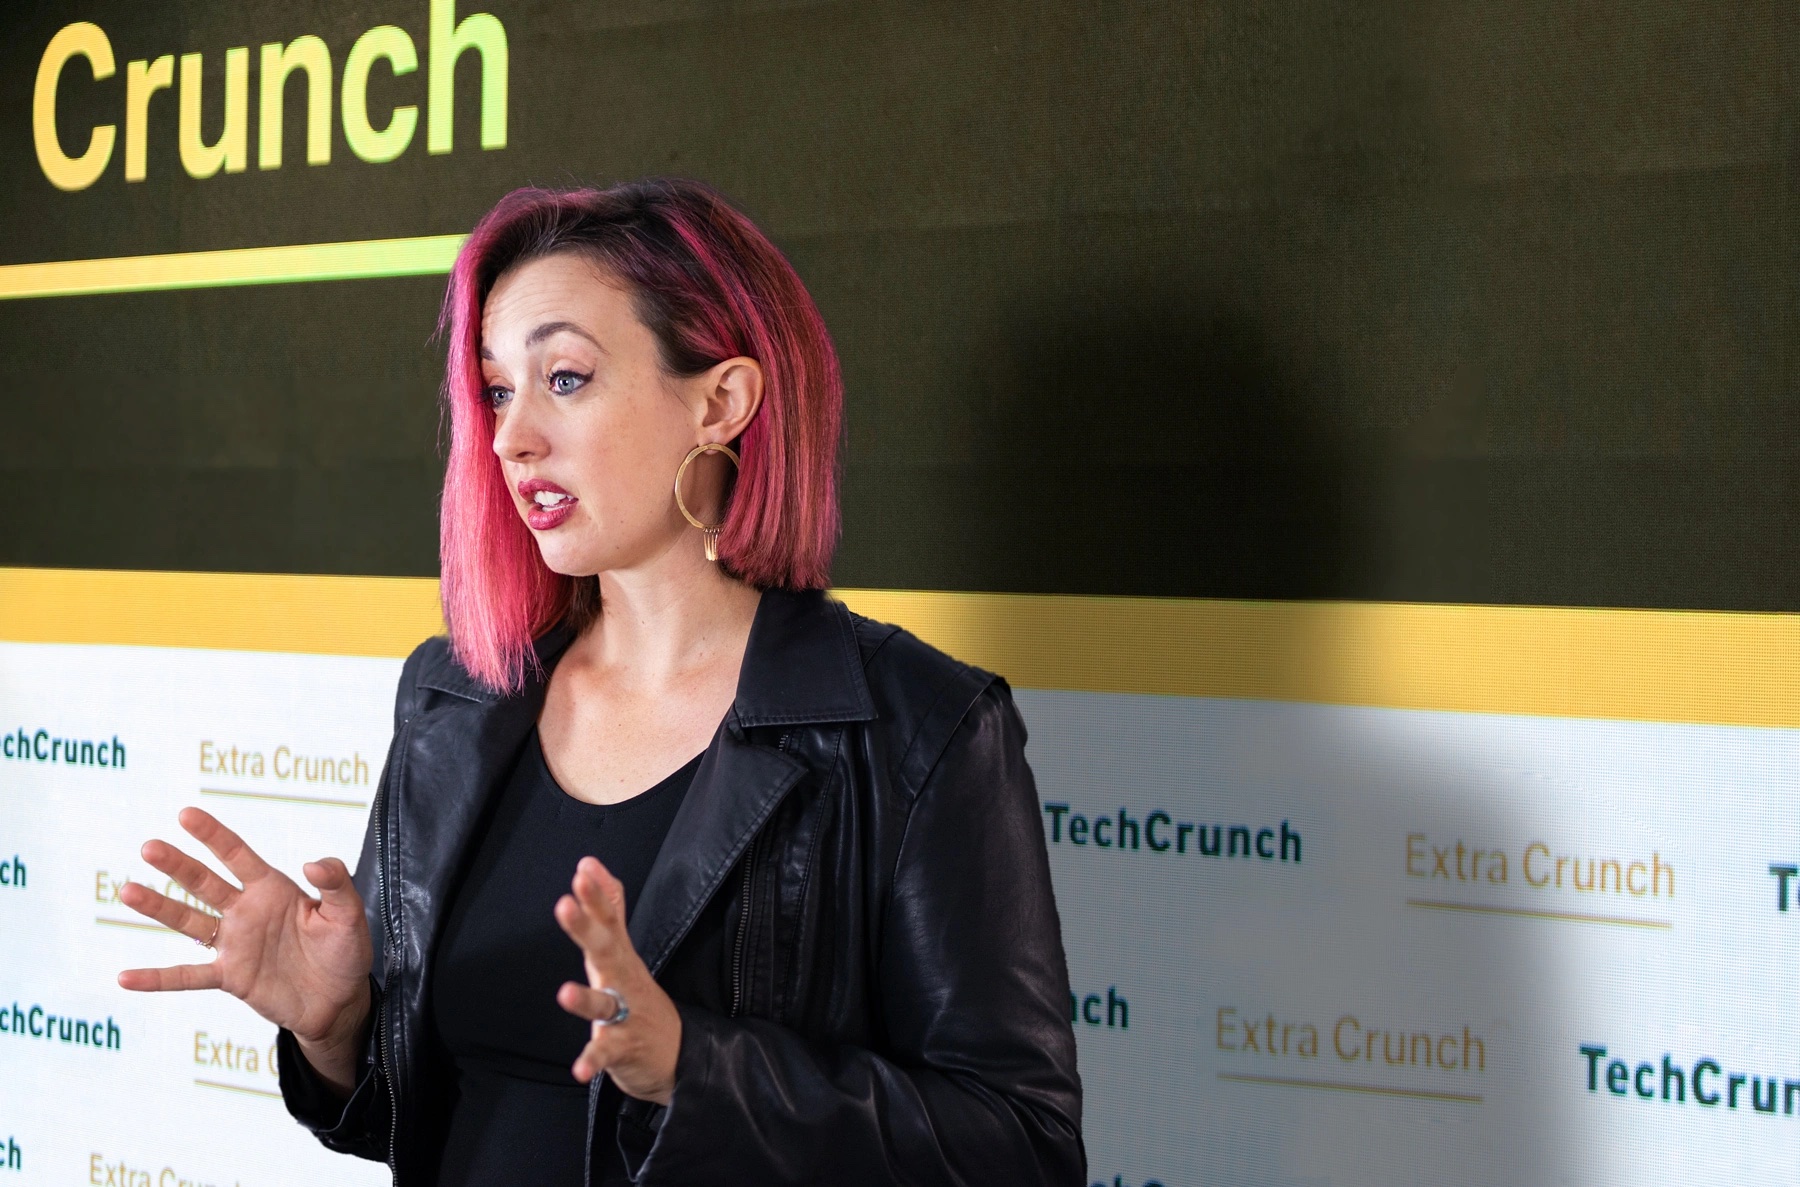 Составное изображение иммиграционного адвоката Софи Алкорн на фоне логотипа TechCrunch.